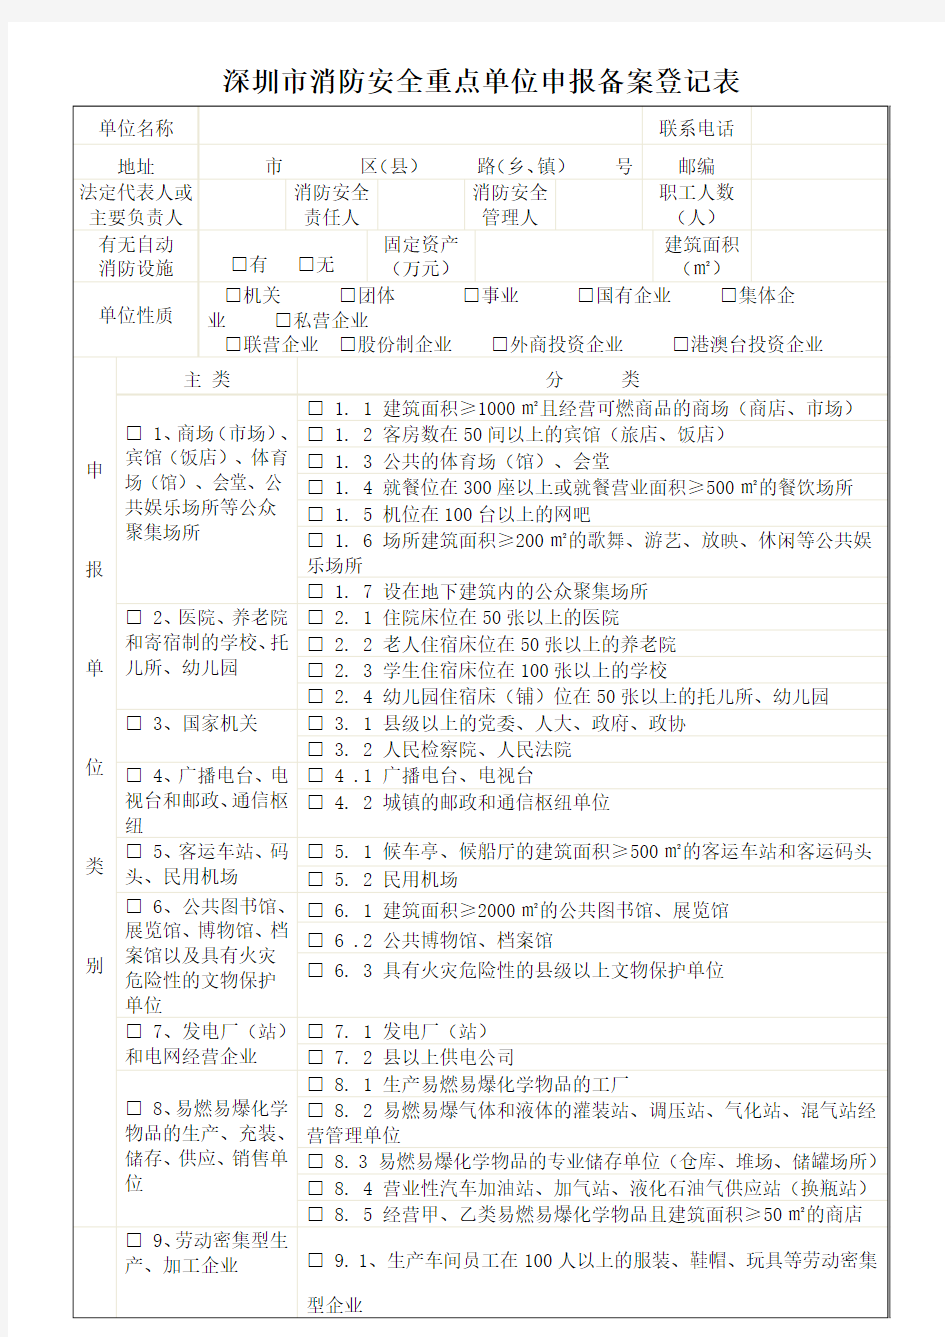 深圳市消防安全重点单位申报备案登记表